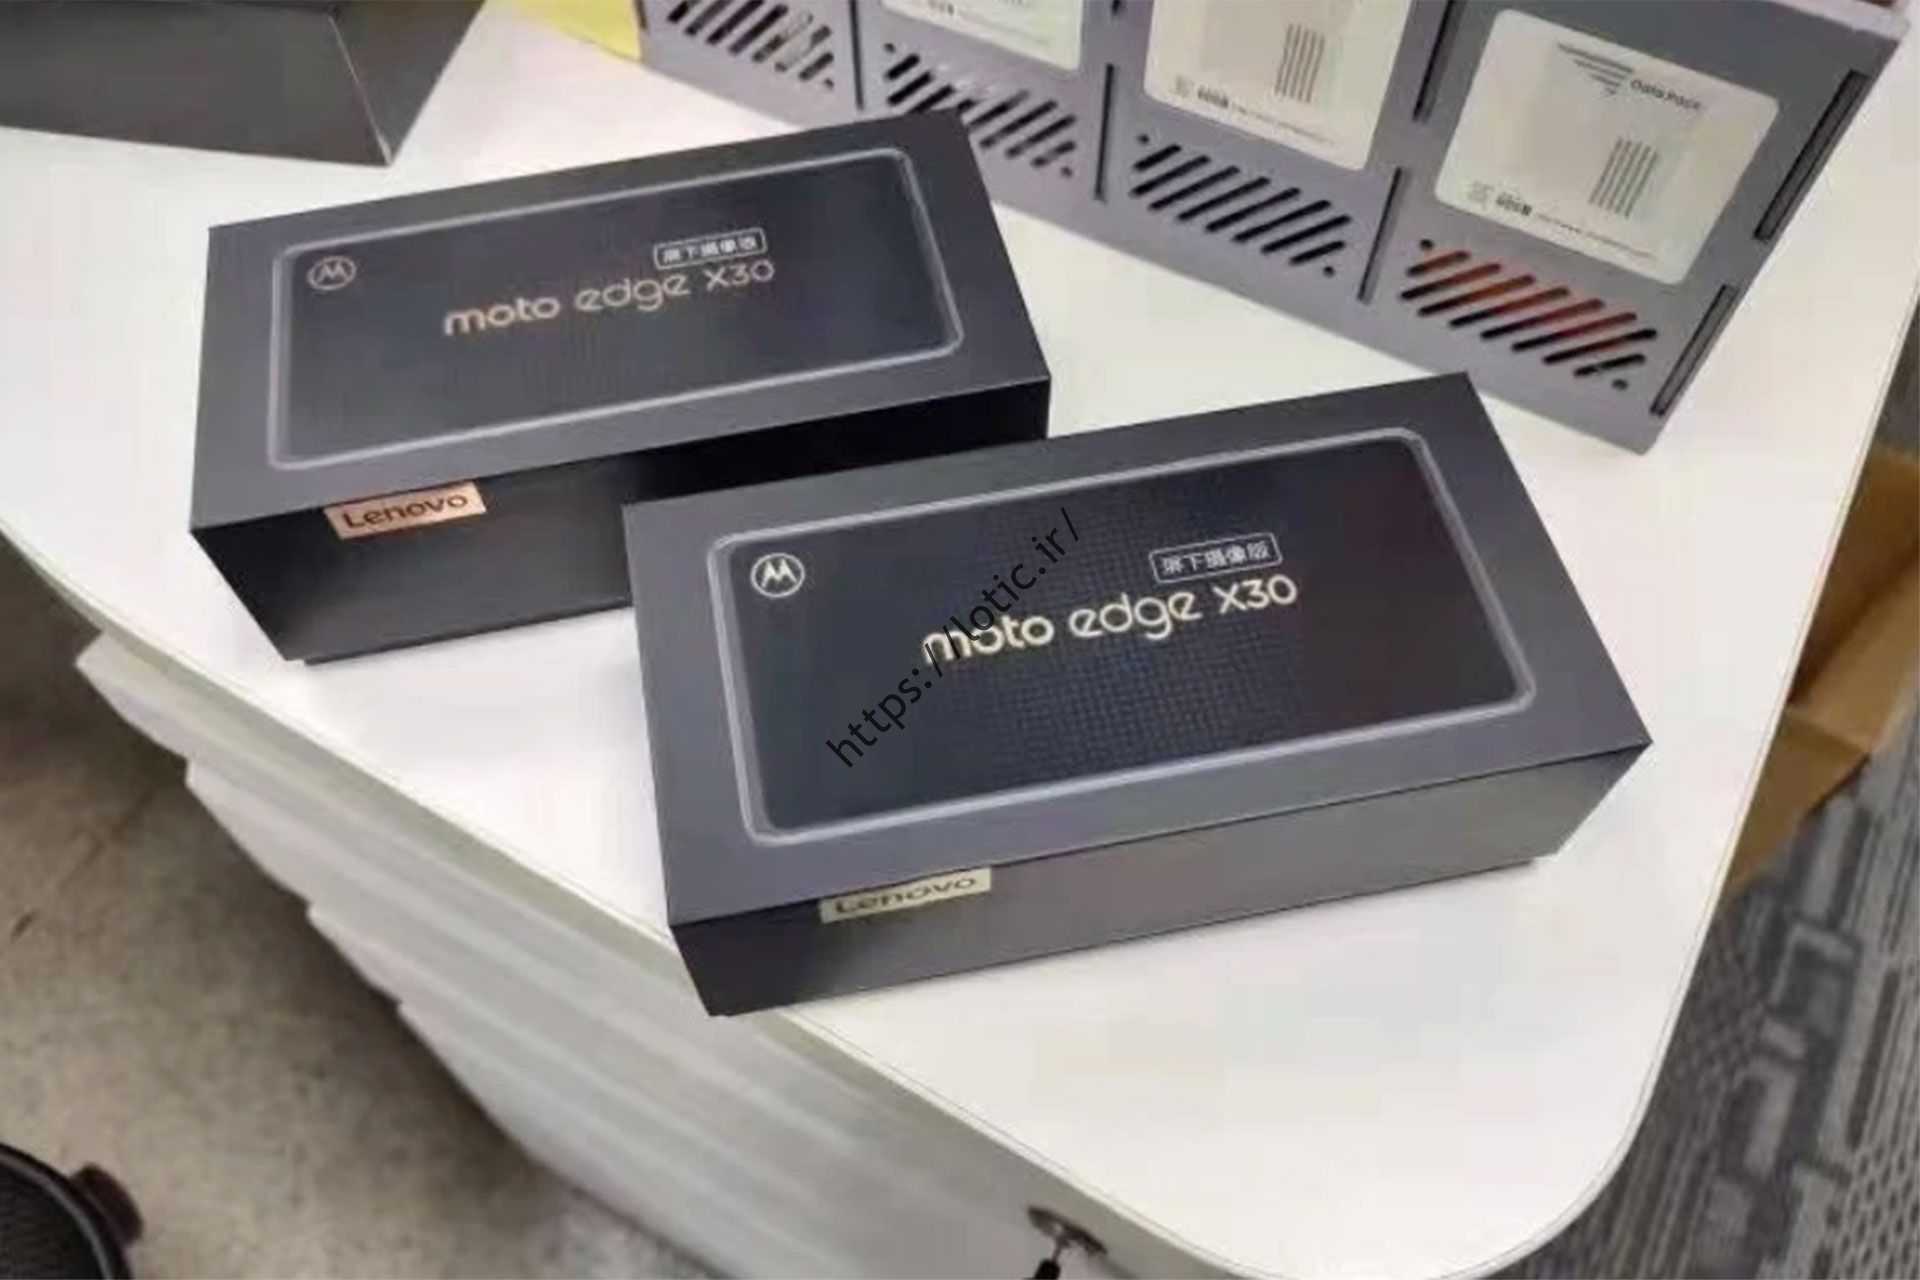 بسته بندی جعبه Moto Edge X30 نسخه دوربین زیر صفحه نمایش